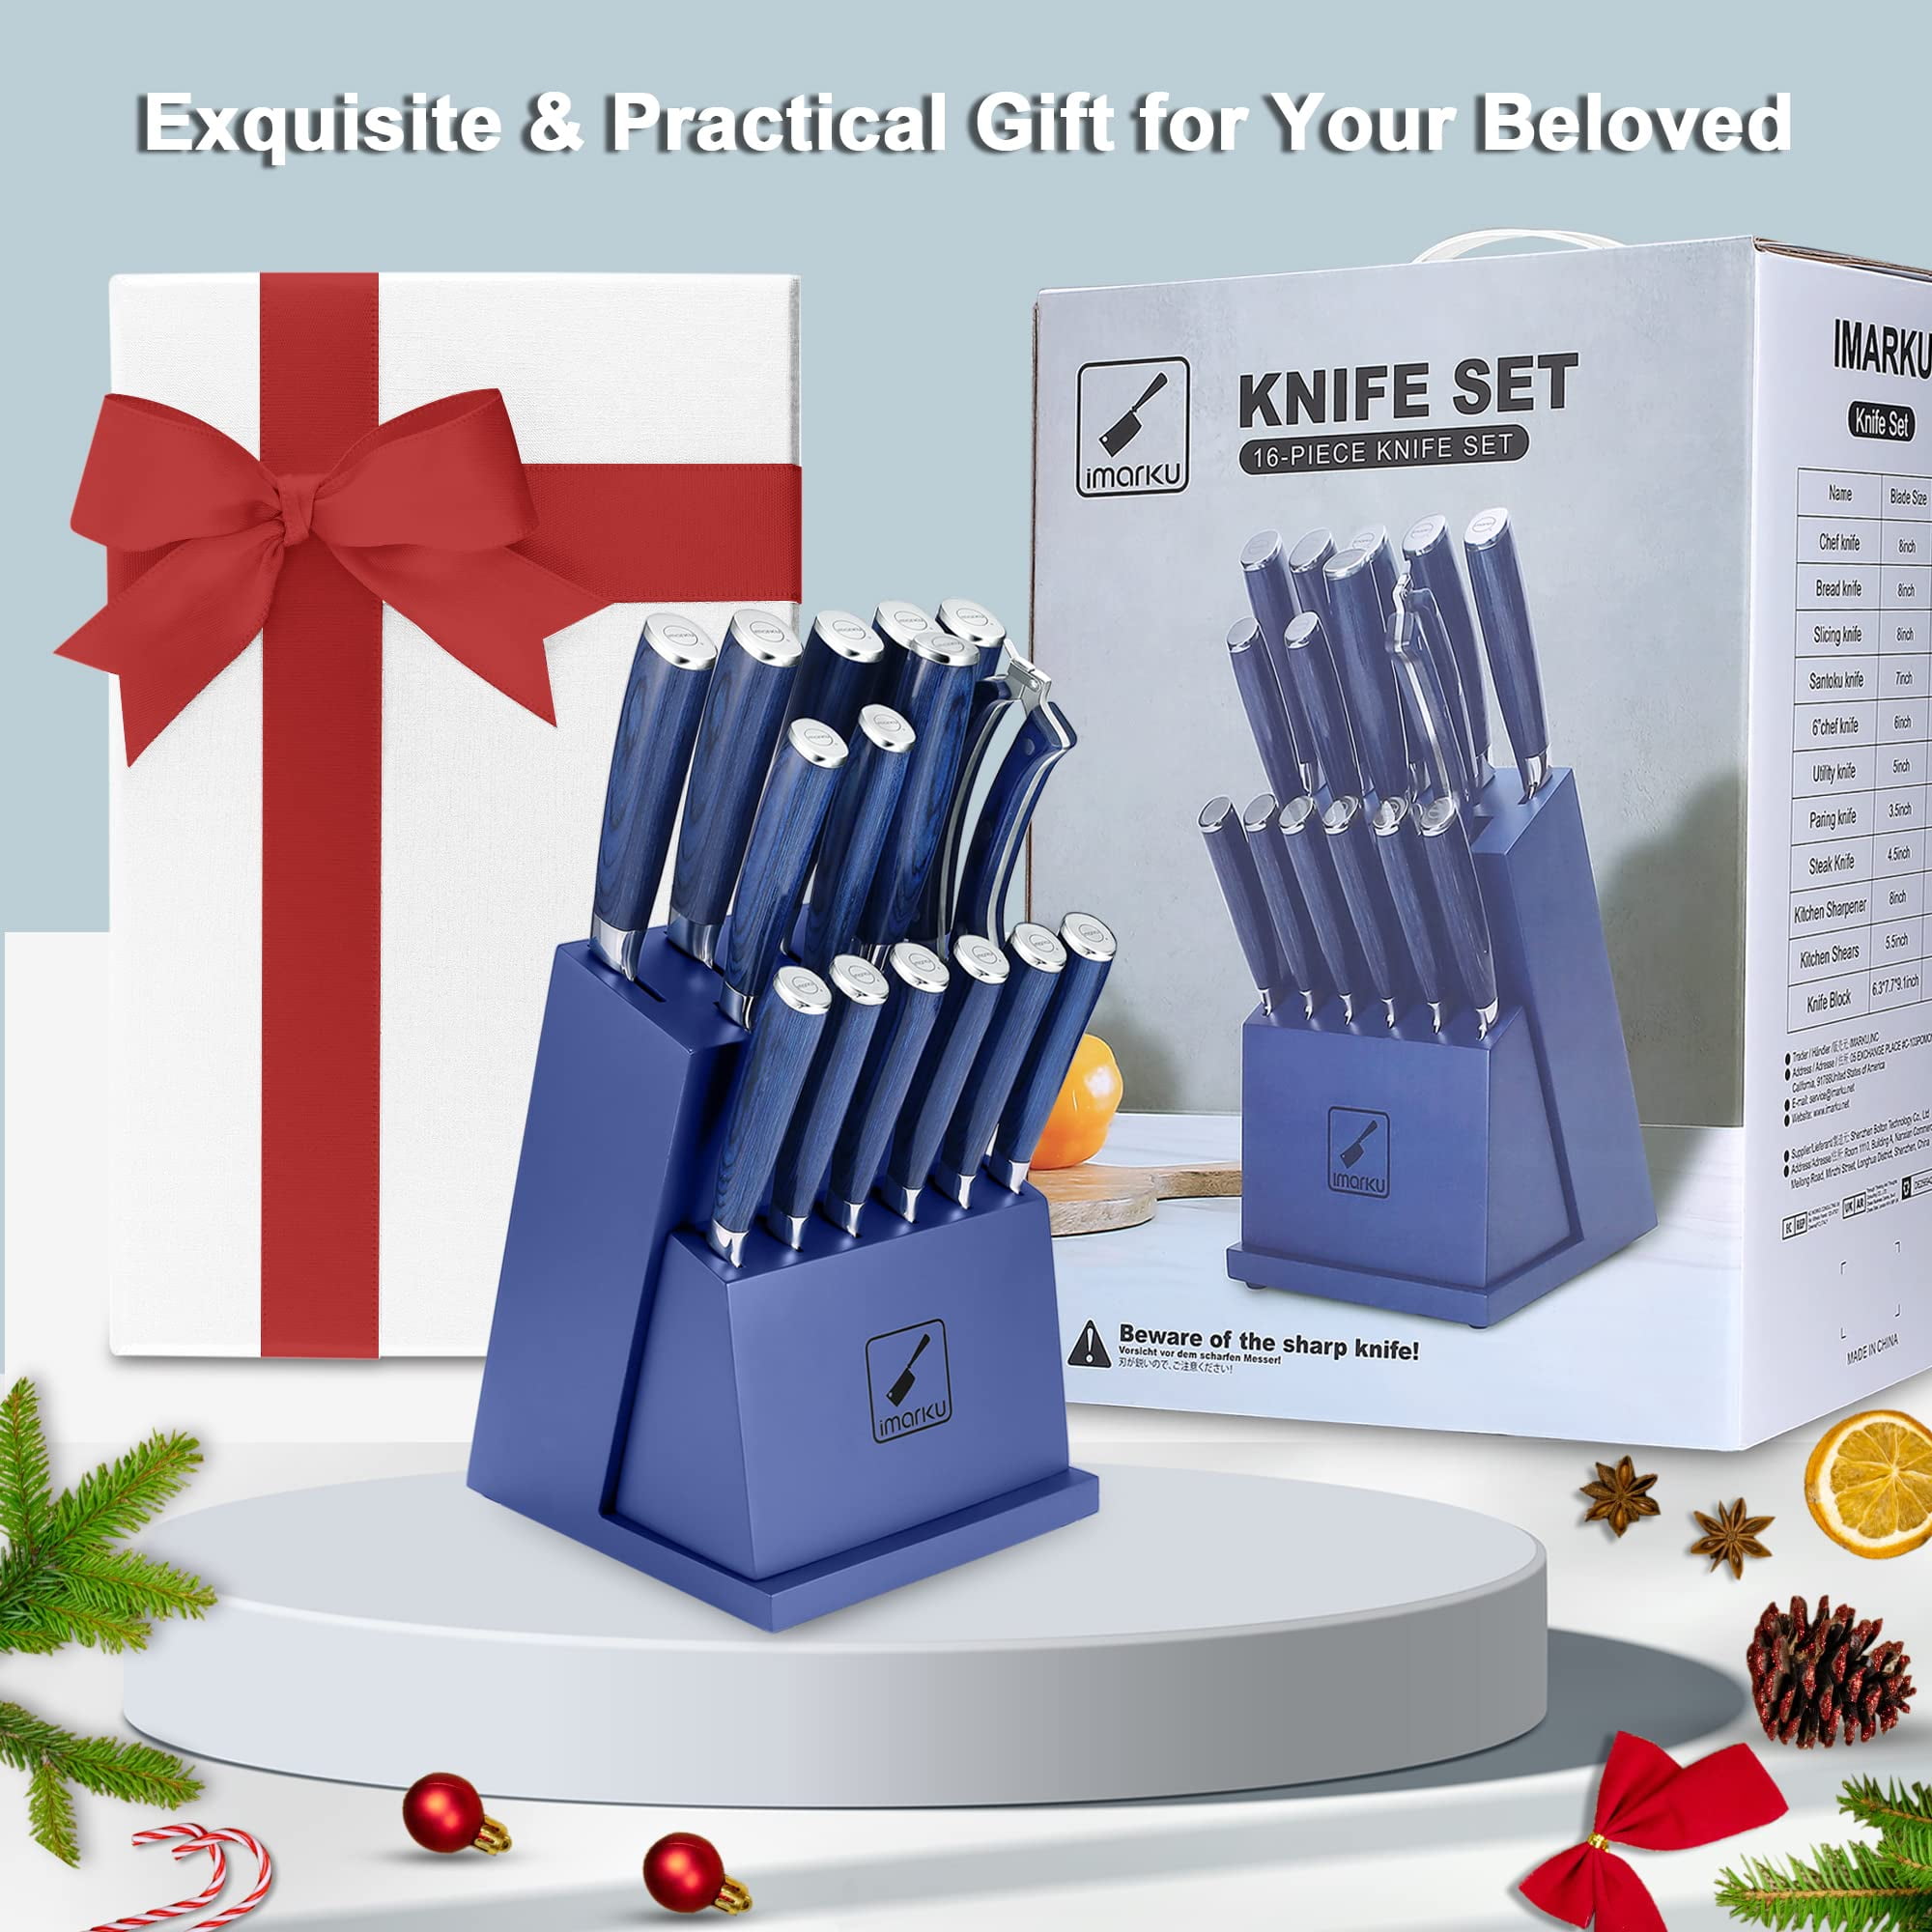 Knife Set, imarku 16-Piece Japanese Kitchen Knife Set, Ultra Sharp